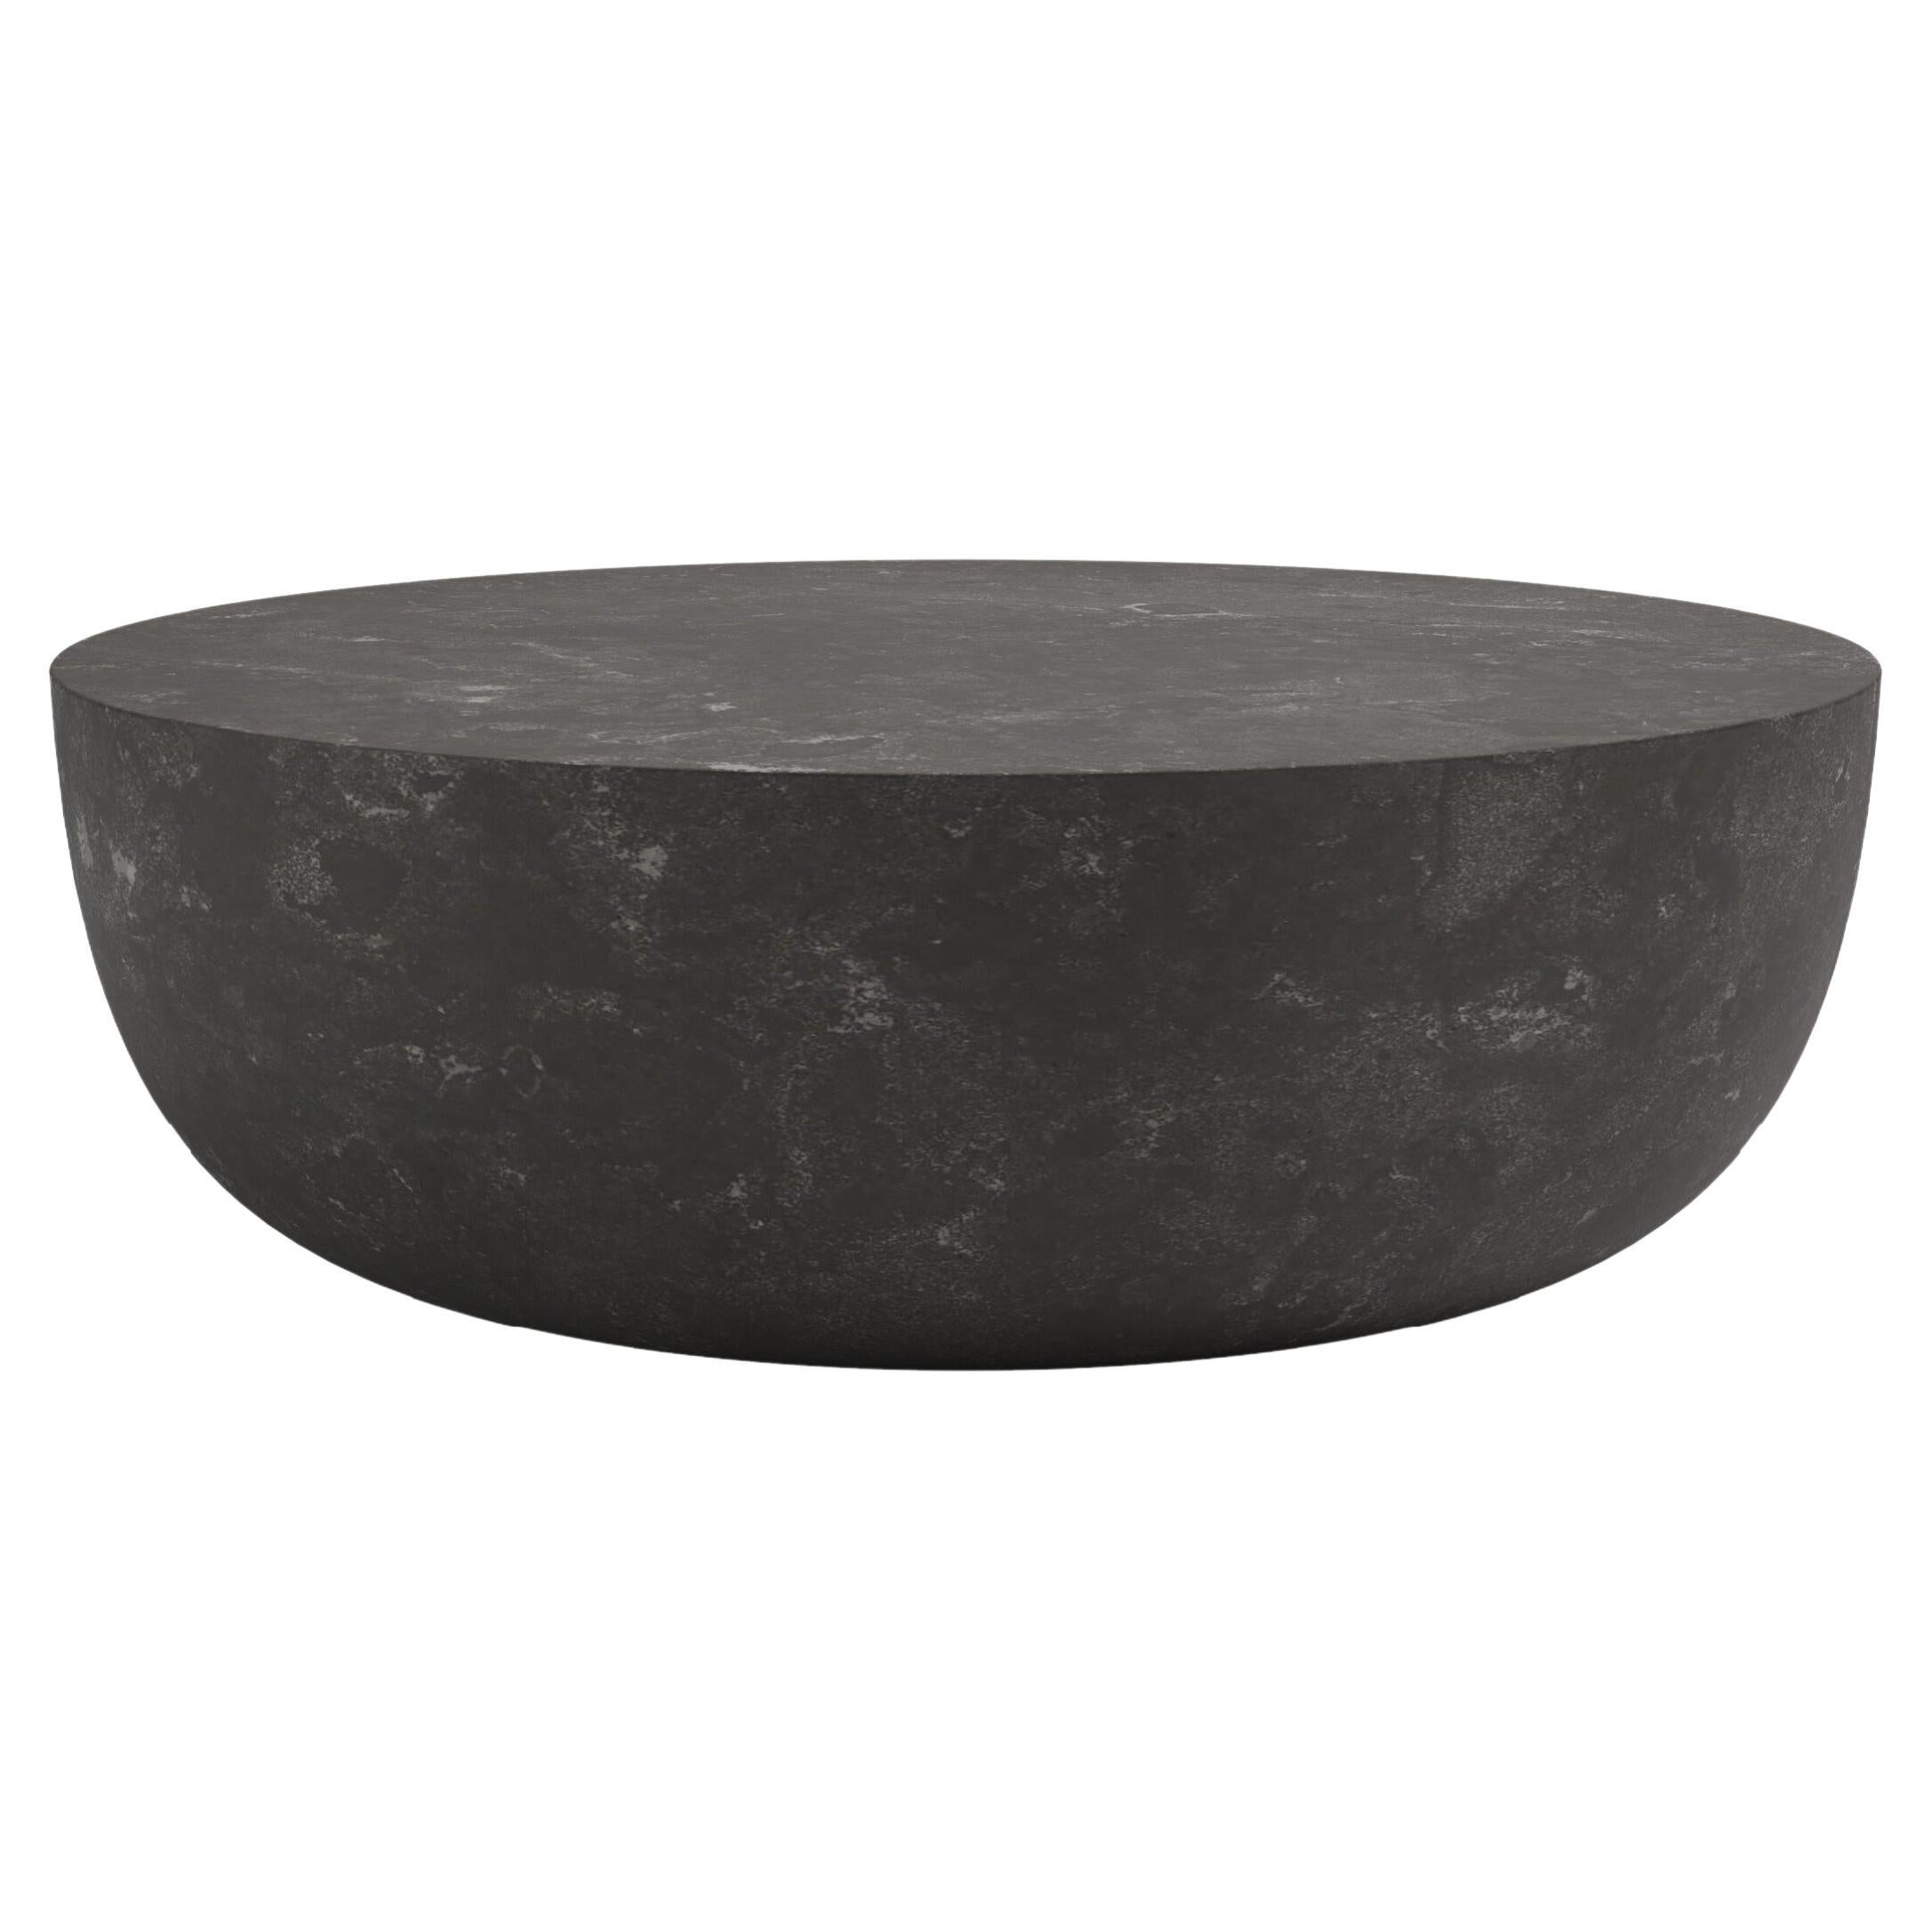 FORM(LA) Sfera Round Coffee Table 54”L x 54”W x 16”H Nero Petite Granite